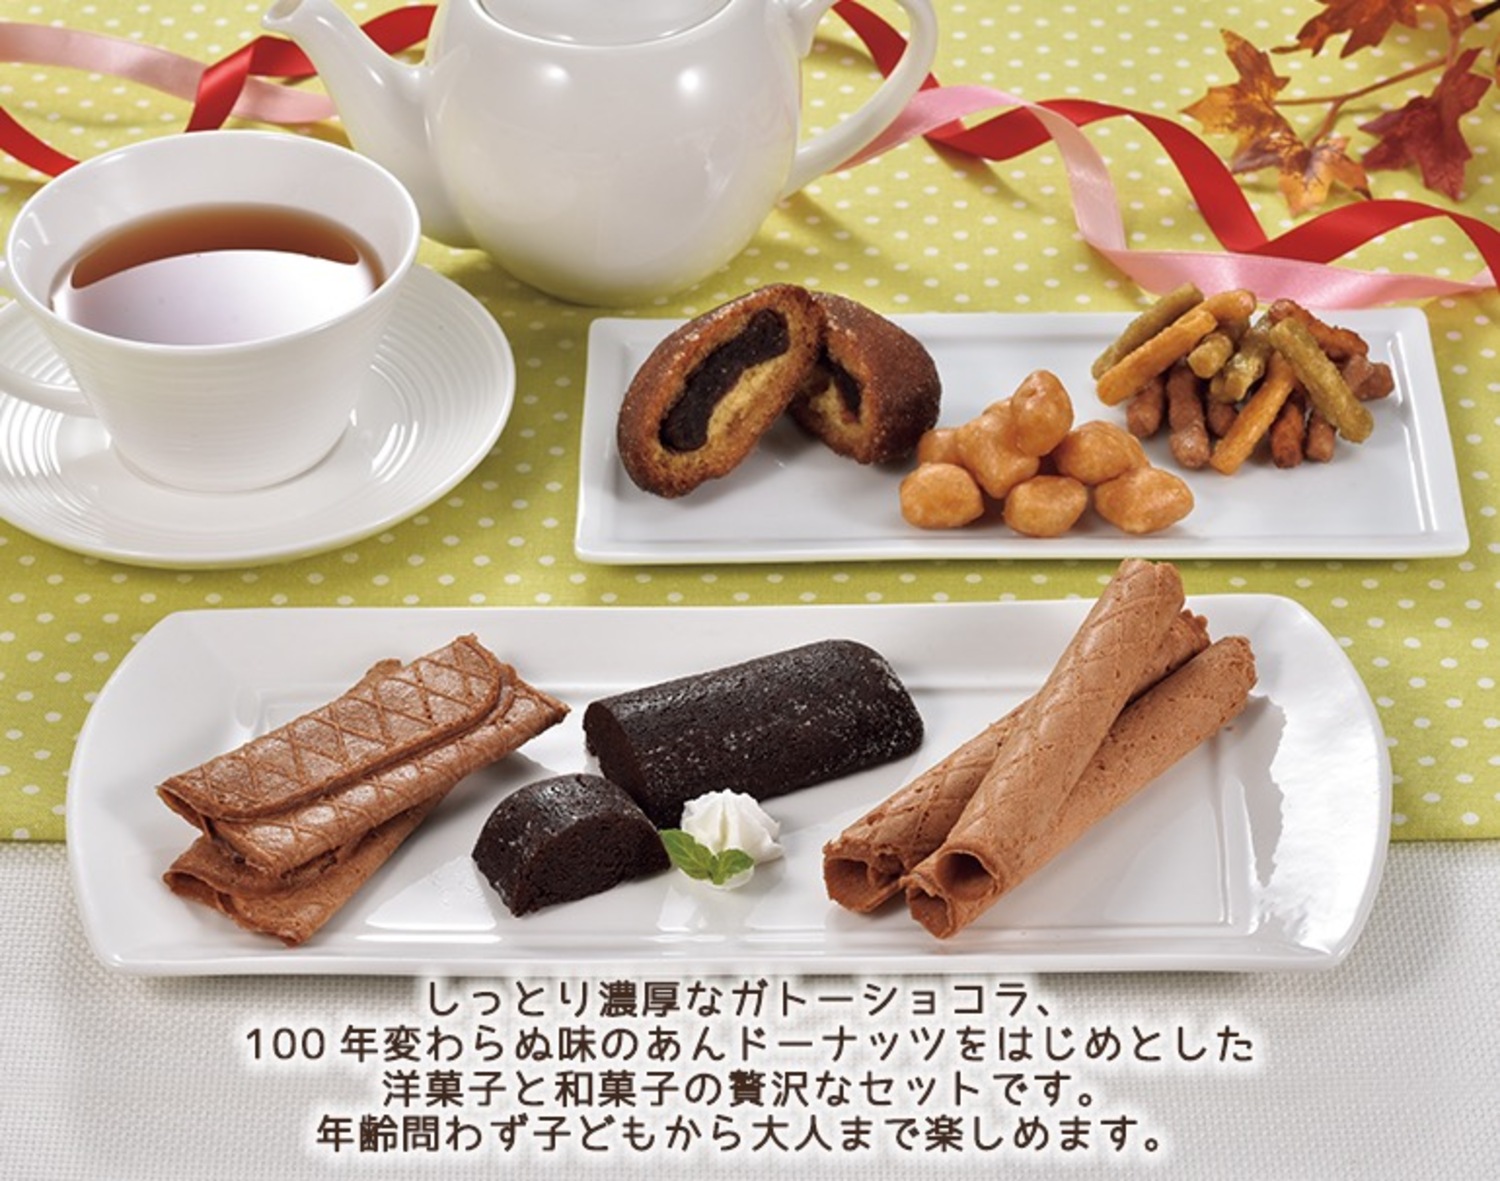 【送料無料】三葉製菓 北海道 よりどりみどりの和菓子・洋菓子詰合せ